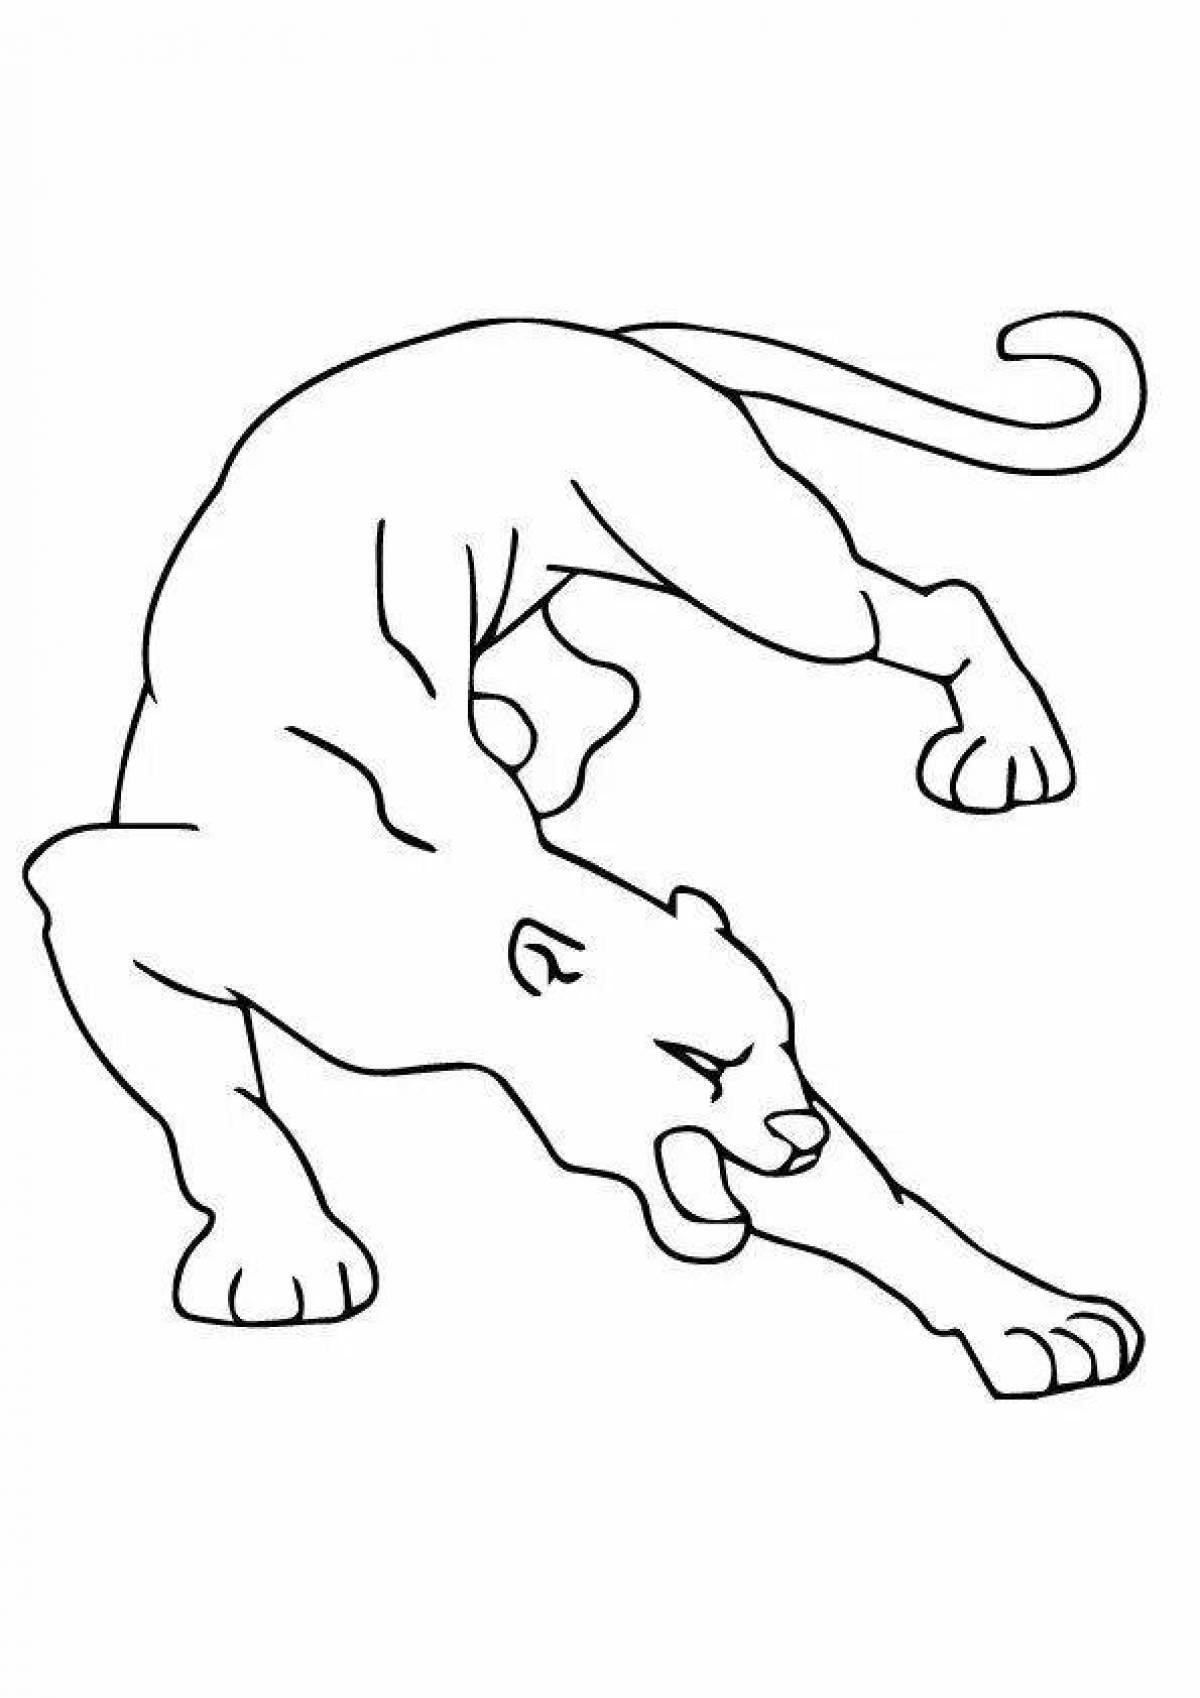 Coloring page elegant panther